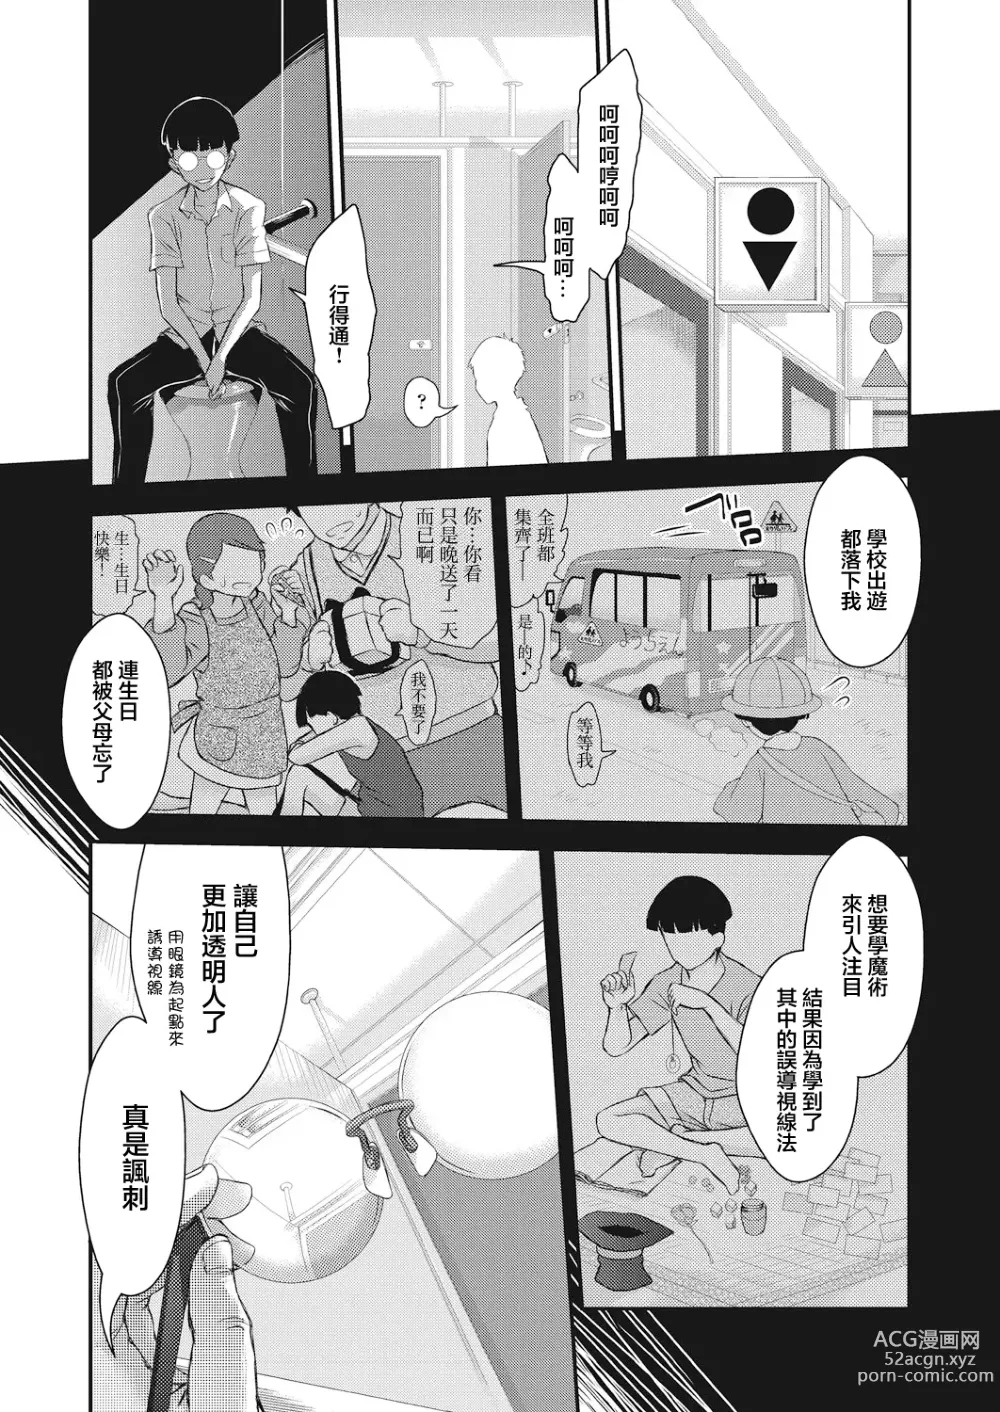 Page 6 of manga BOCCHI NO ZAMMA